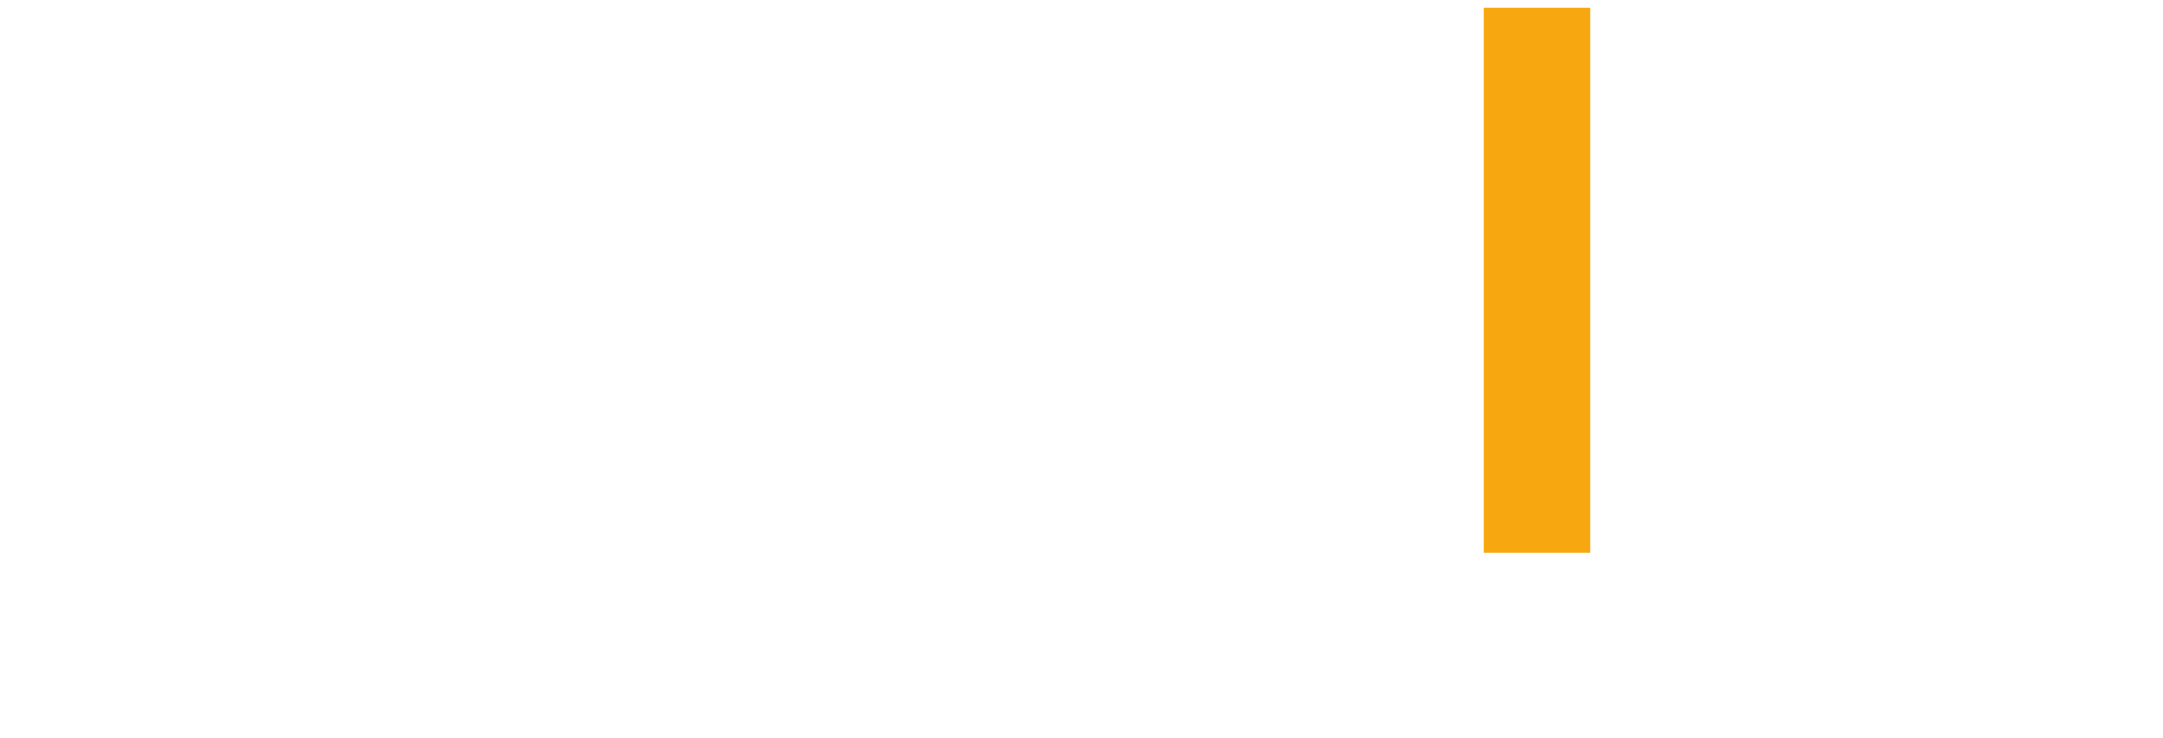 Bybit-logo